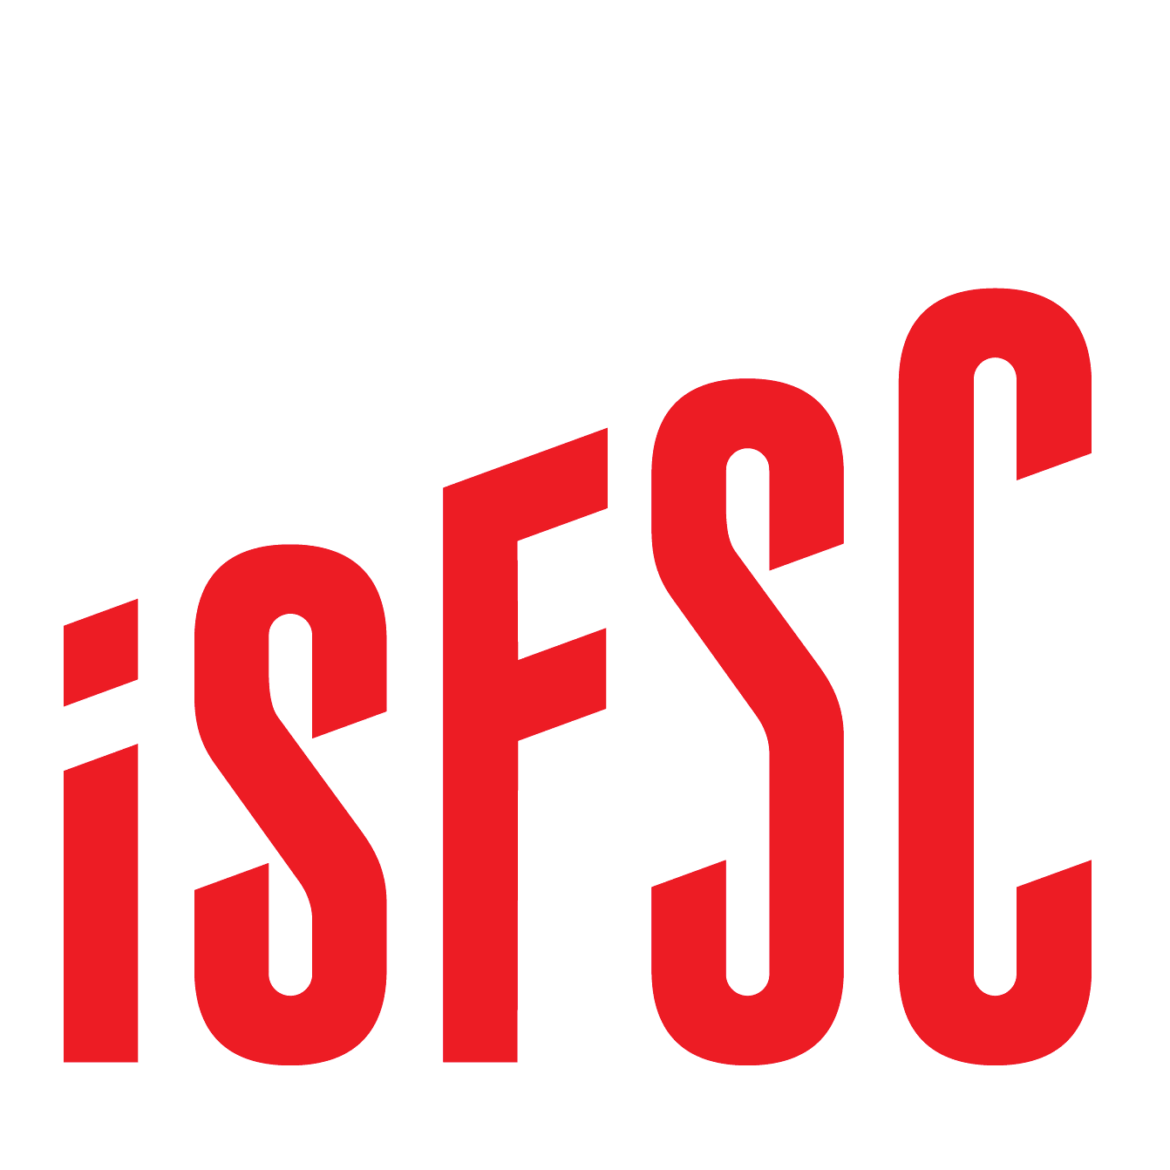 ISFSC-SANS-FOND-ED1C24.png